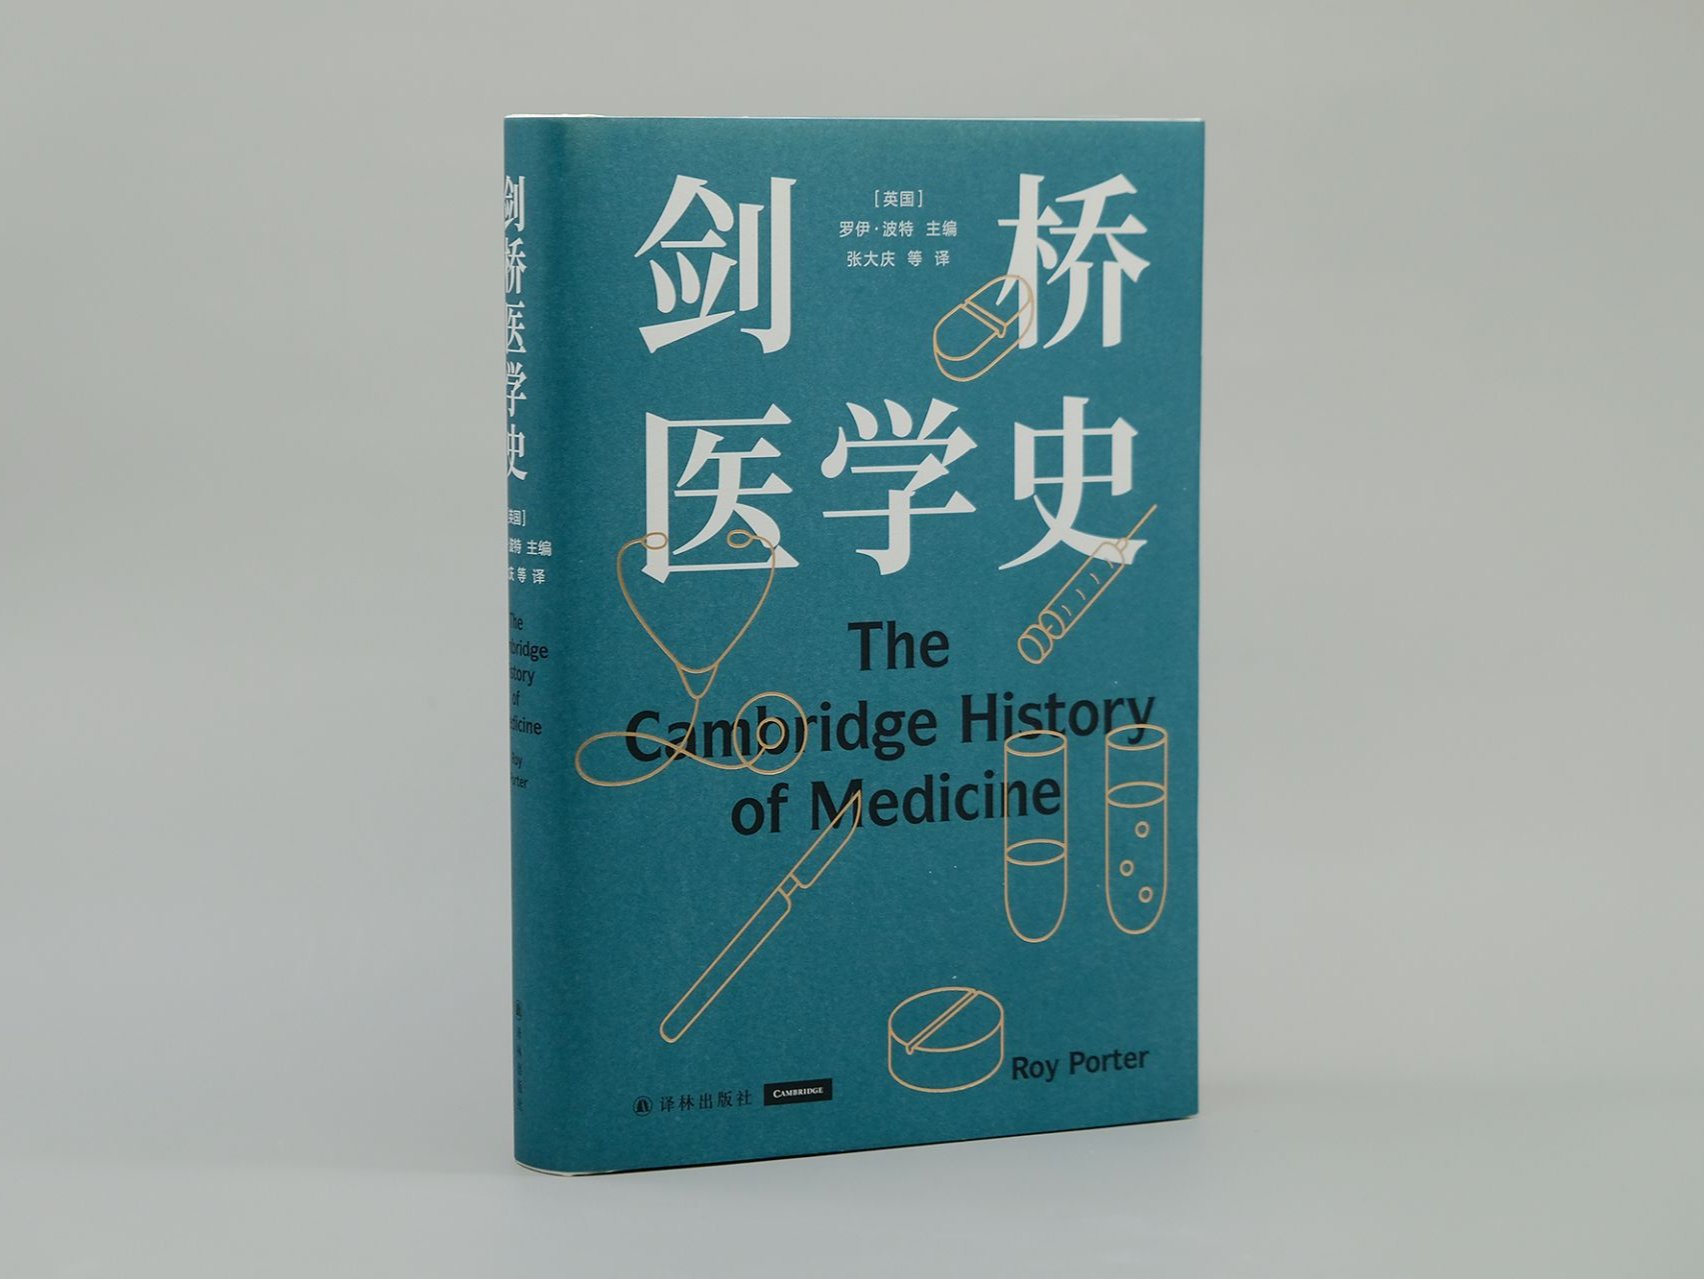 医学史大家罗伊 · 波特之作《剑桥医学史》经典重版归来  ​